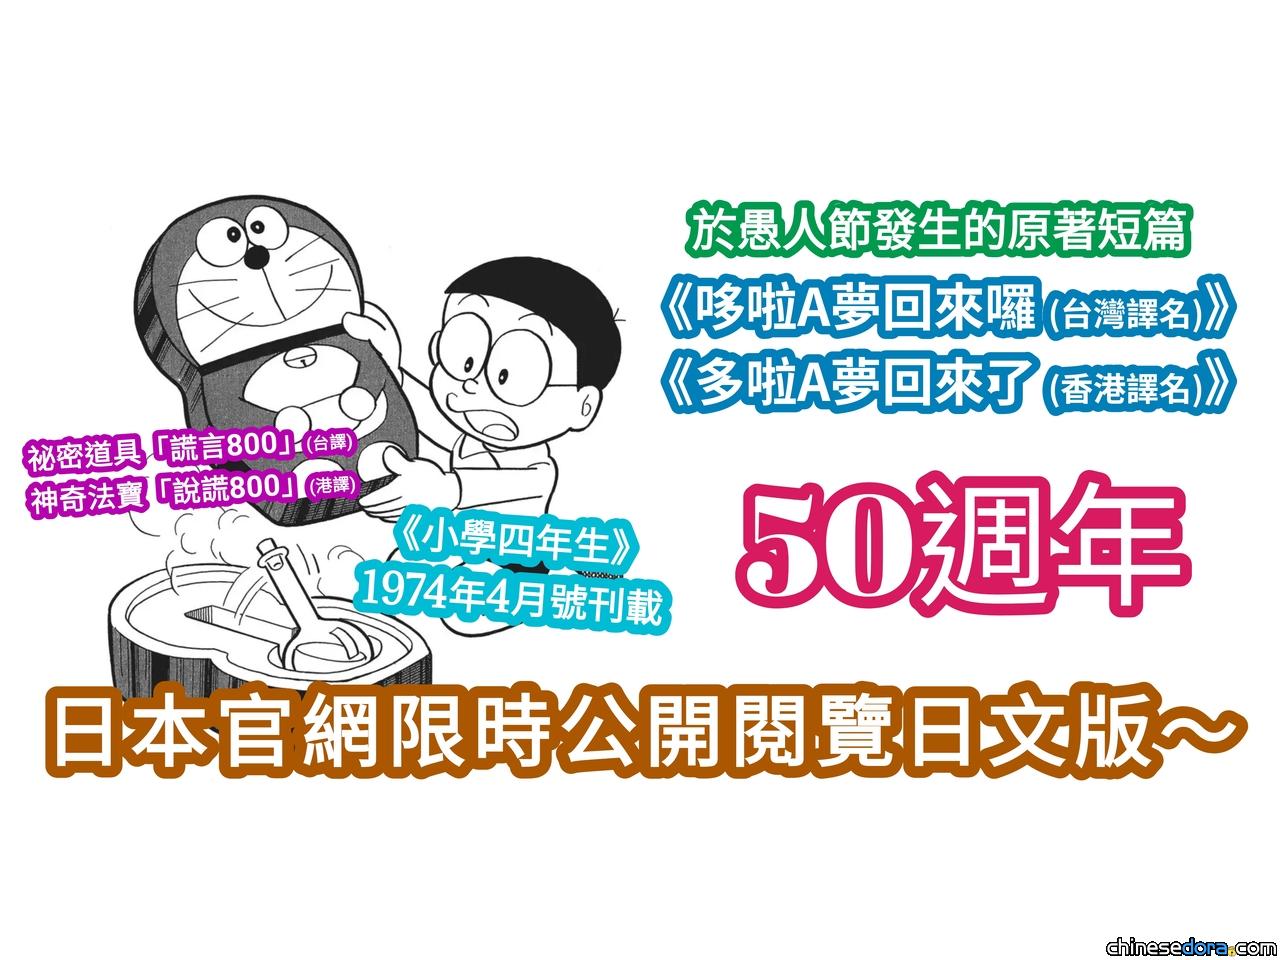 [日本] 今年愚人節是「哆啦A夢回到大雄身邊50週年」?! 哆啦A夢官網經典漫畫限時免費看